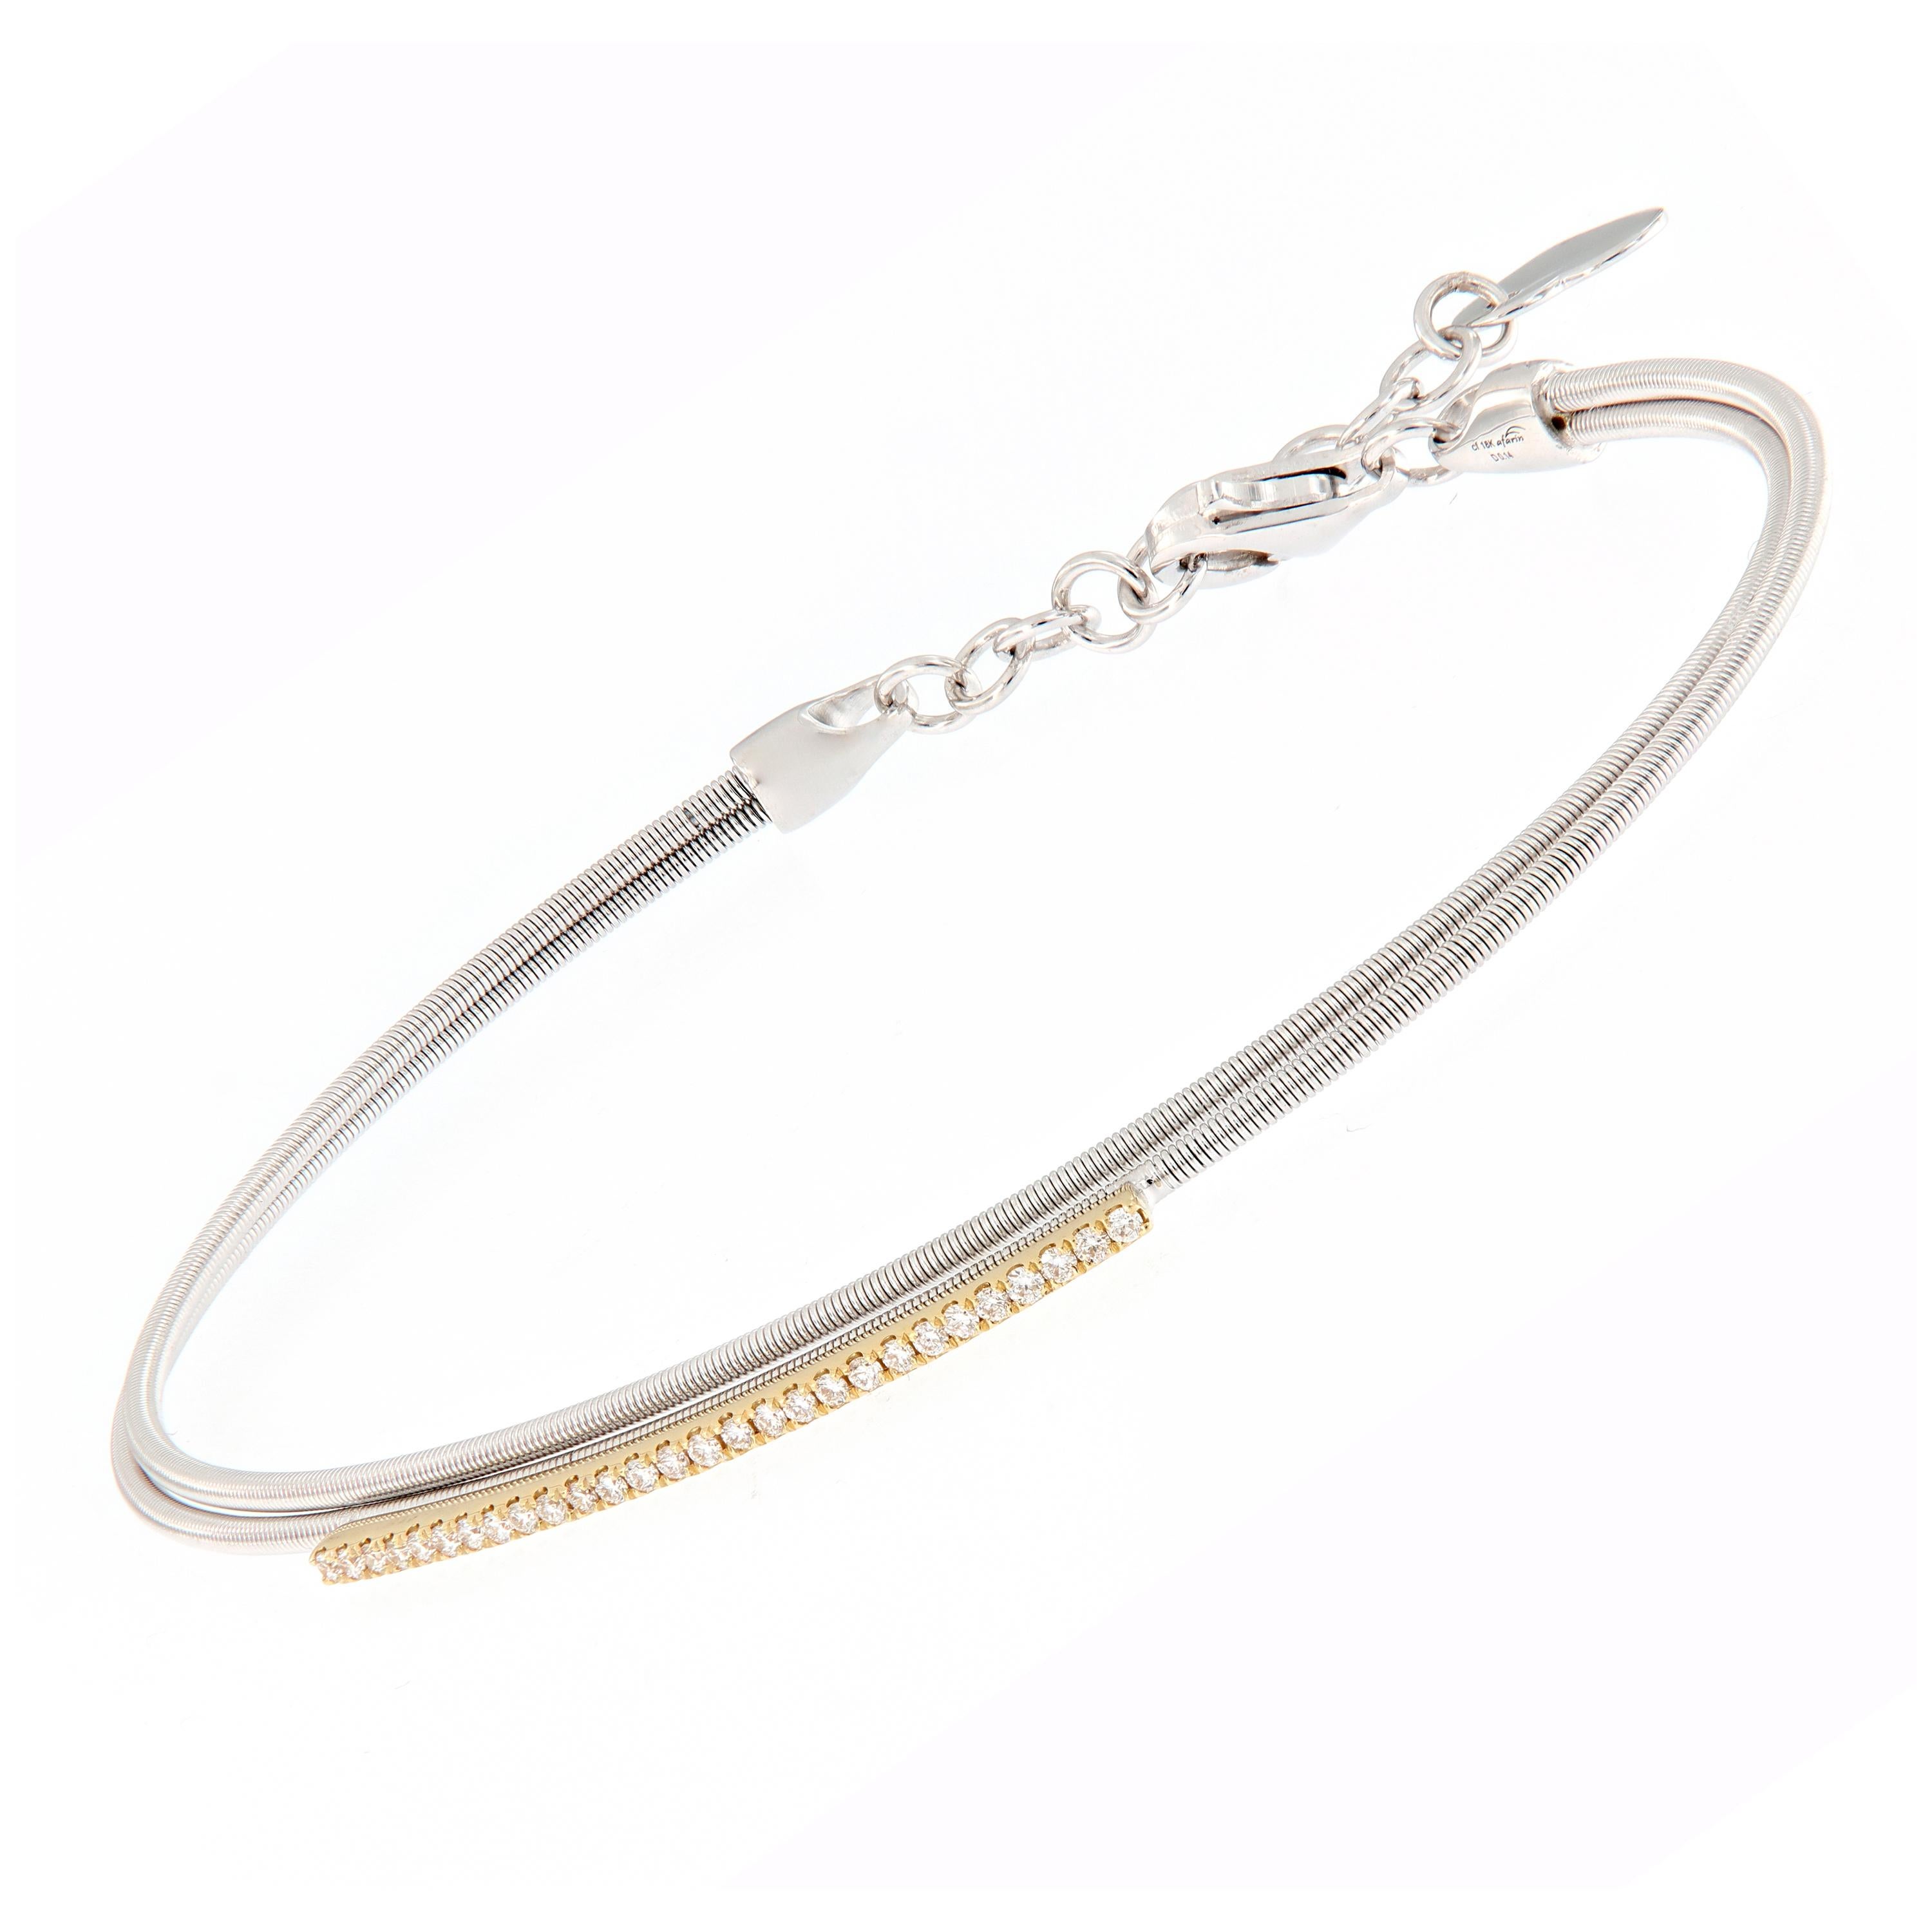 Enveloppez son poignet dans l'éclat et le confort. Ce bracelet à double fil est réalisé en or blanc 18 carats et agrémenté d'une barre de diamants jaunes 18 carats. Le bracelet se ferme à l'aide d'un fermoir à chaîne de sécurité orné d'un cœur.